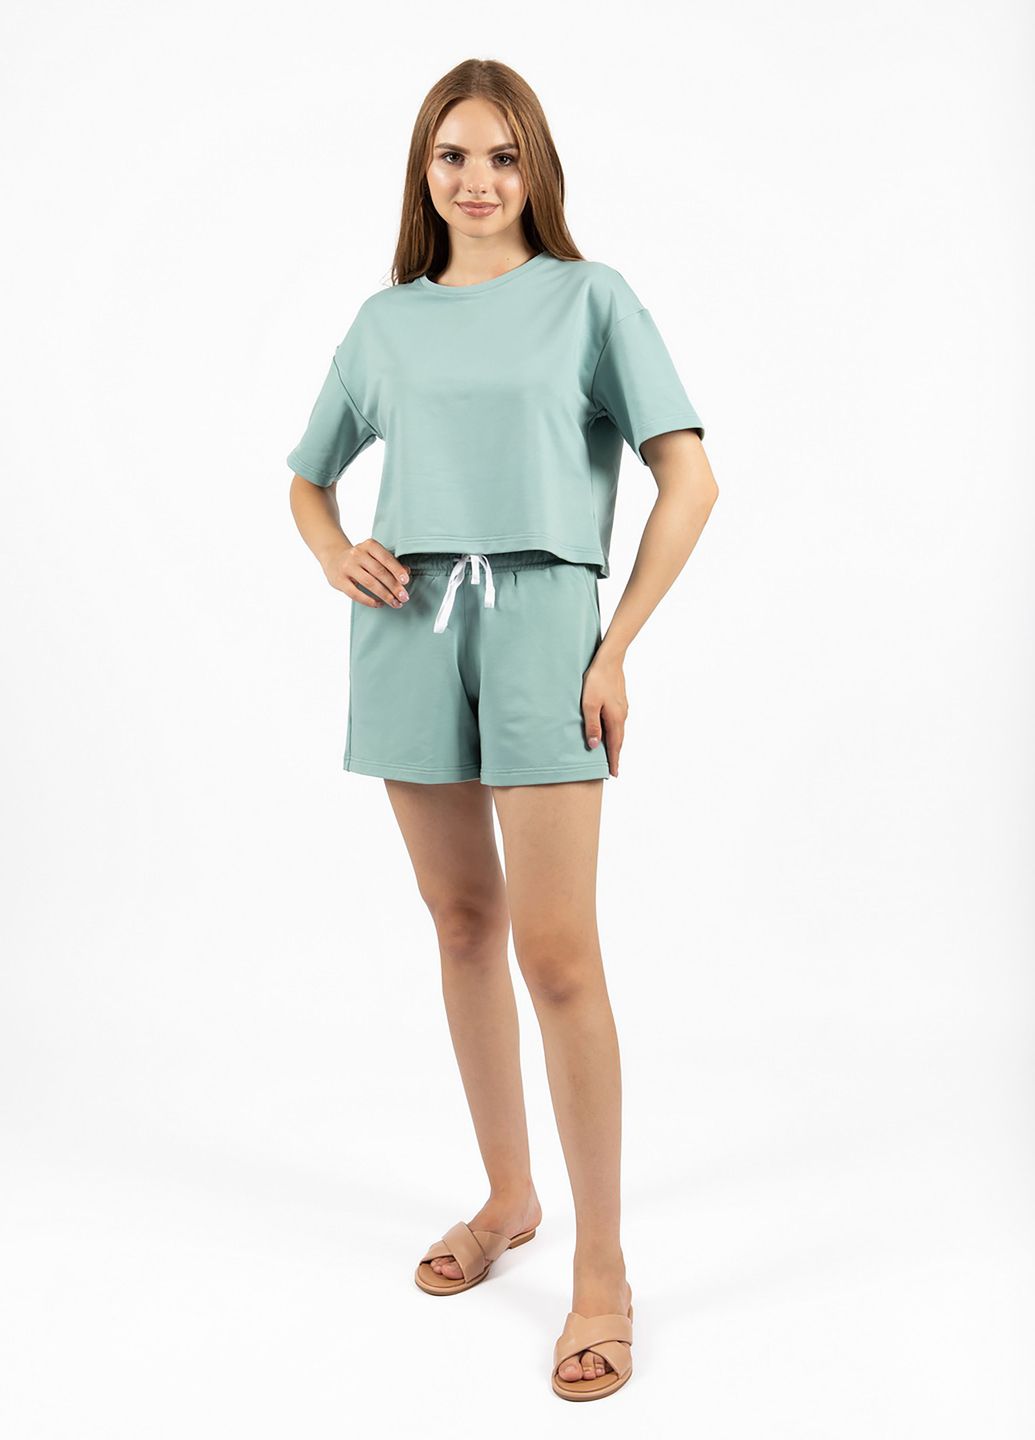 Купить Оверсайз футболка женская Merlini Нарбон 800000004 - Зелёный, 42-44 в интернет-магазине